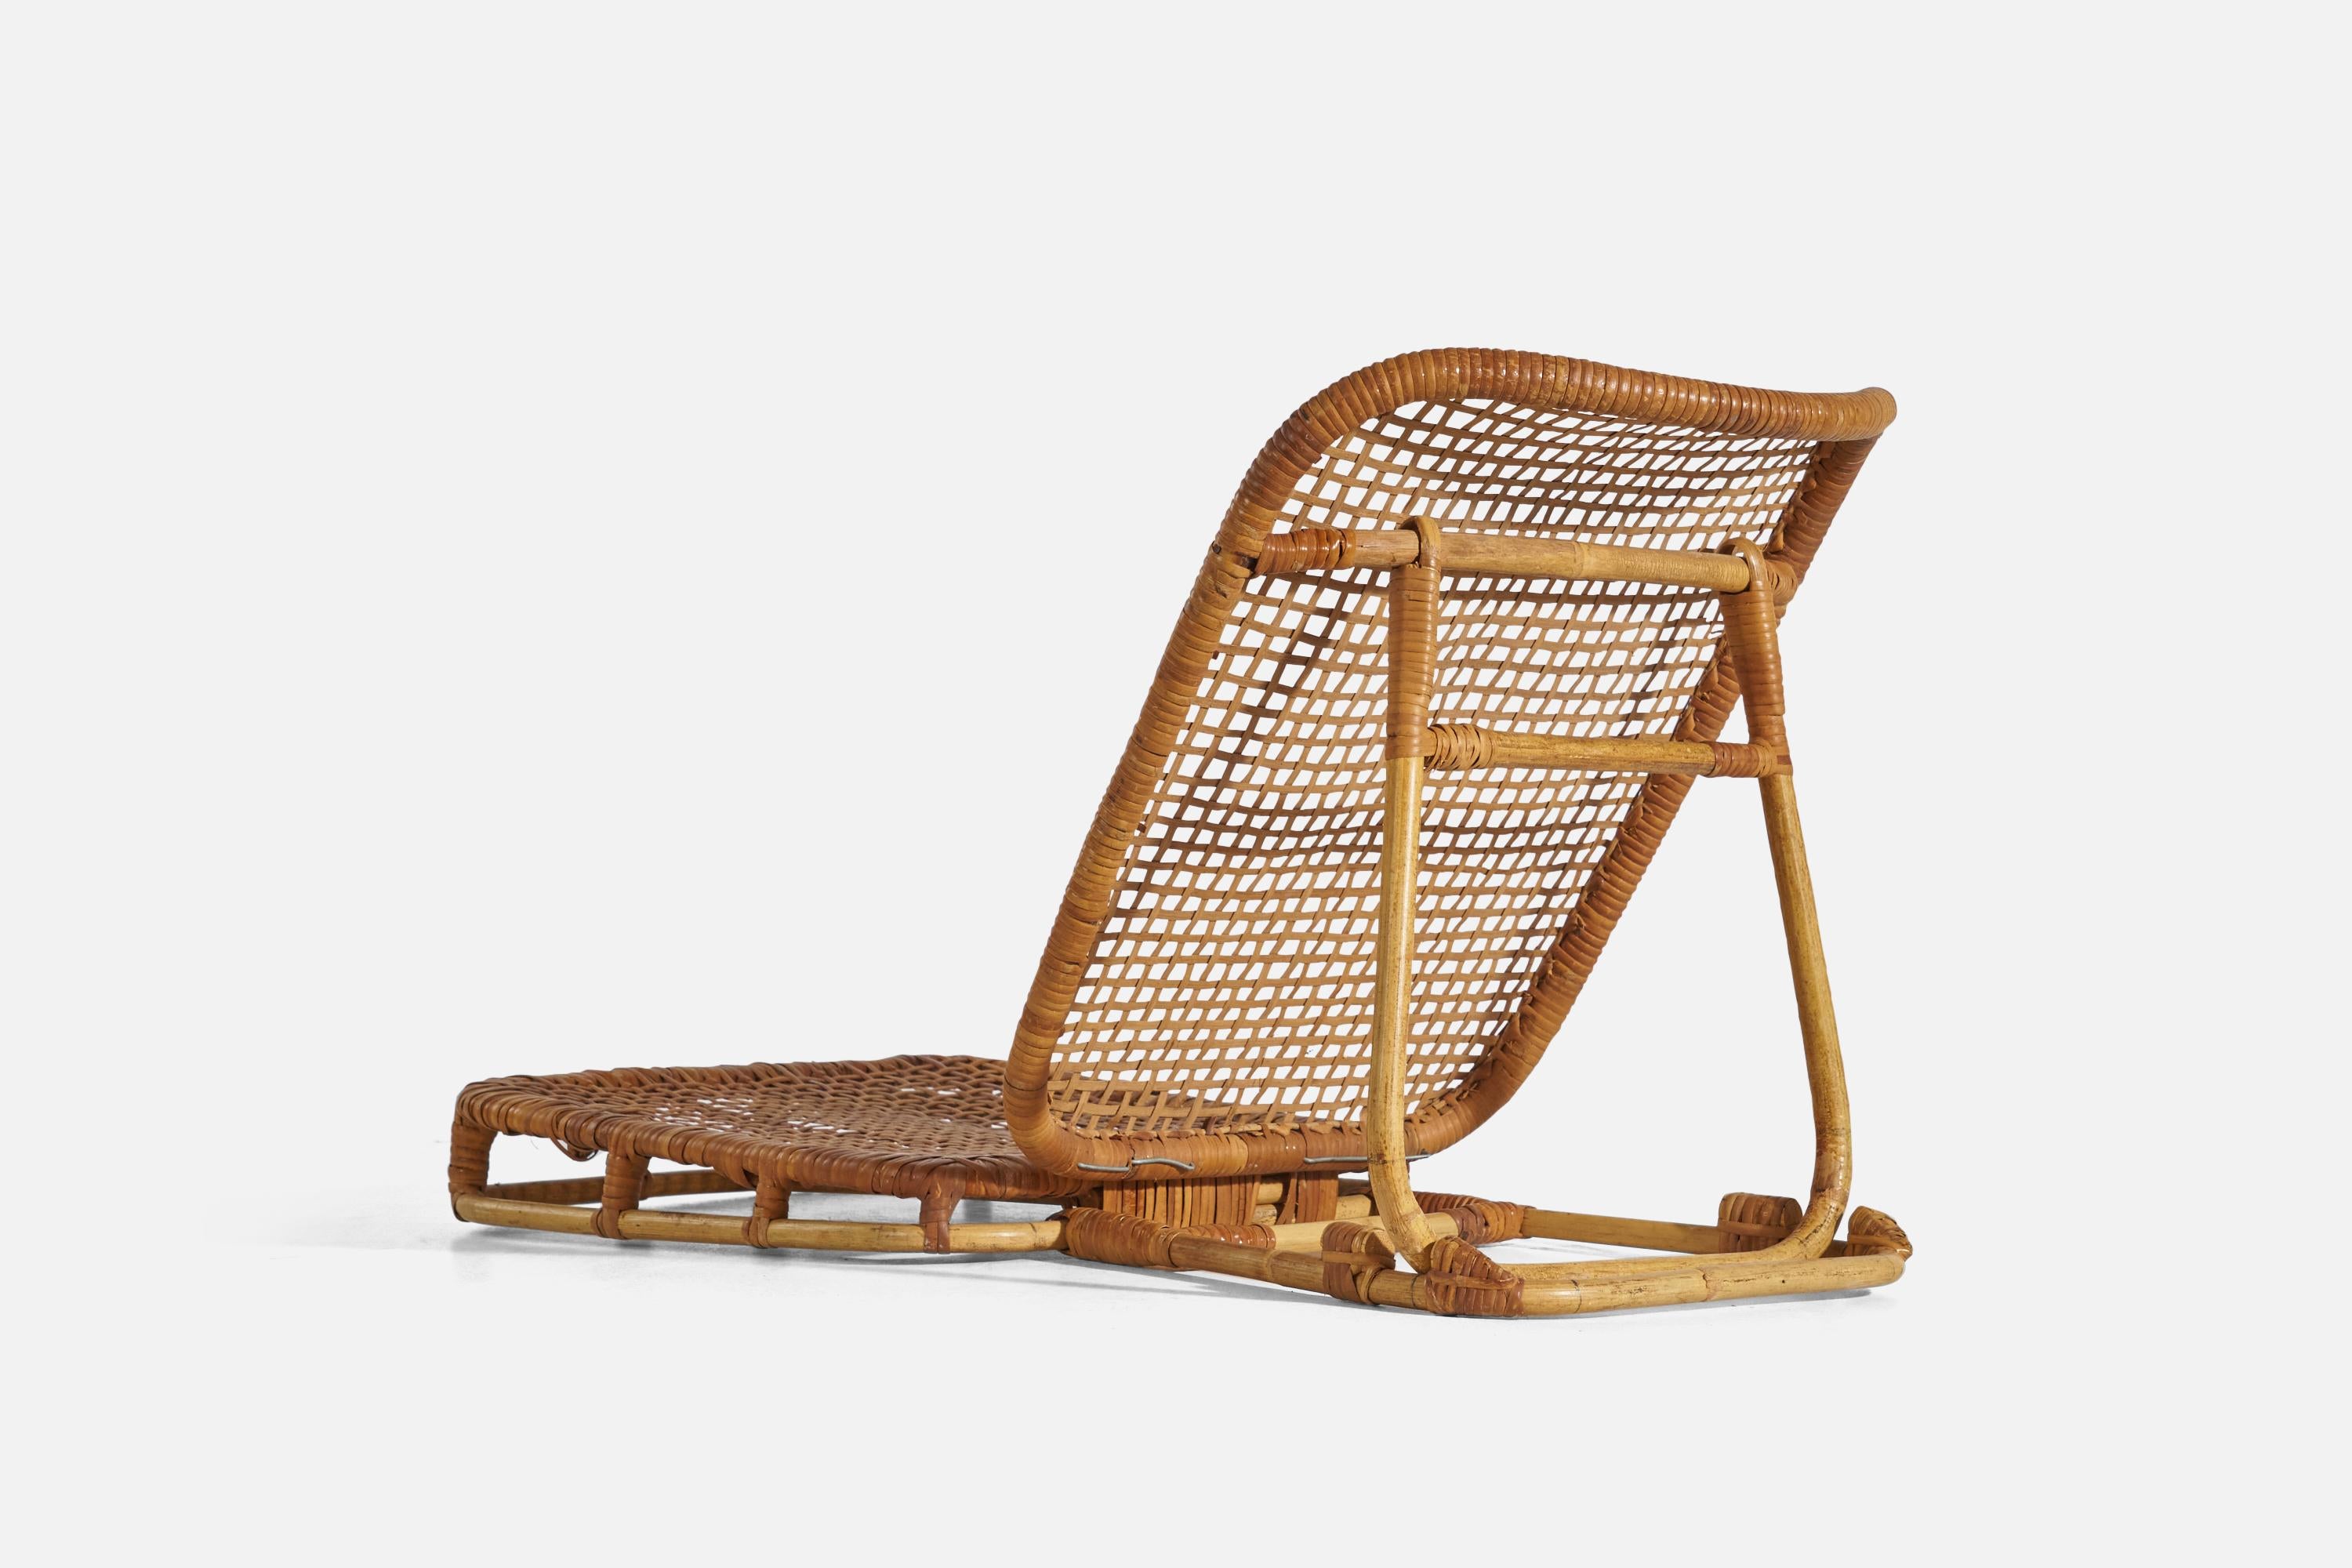 Calif-Asia, niedrige klappbare Stühle, Rattan, USA, 1960er Jahre (Skandinavische Moderne)